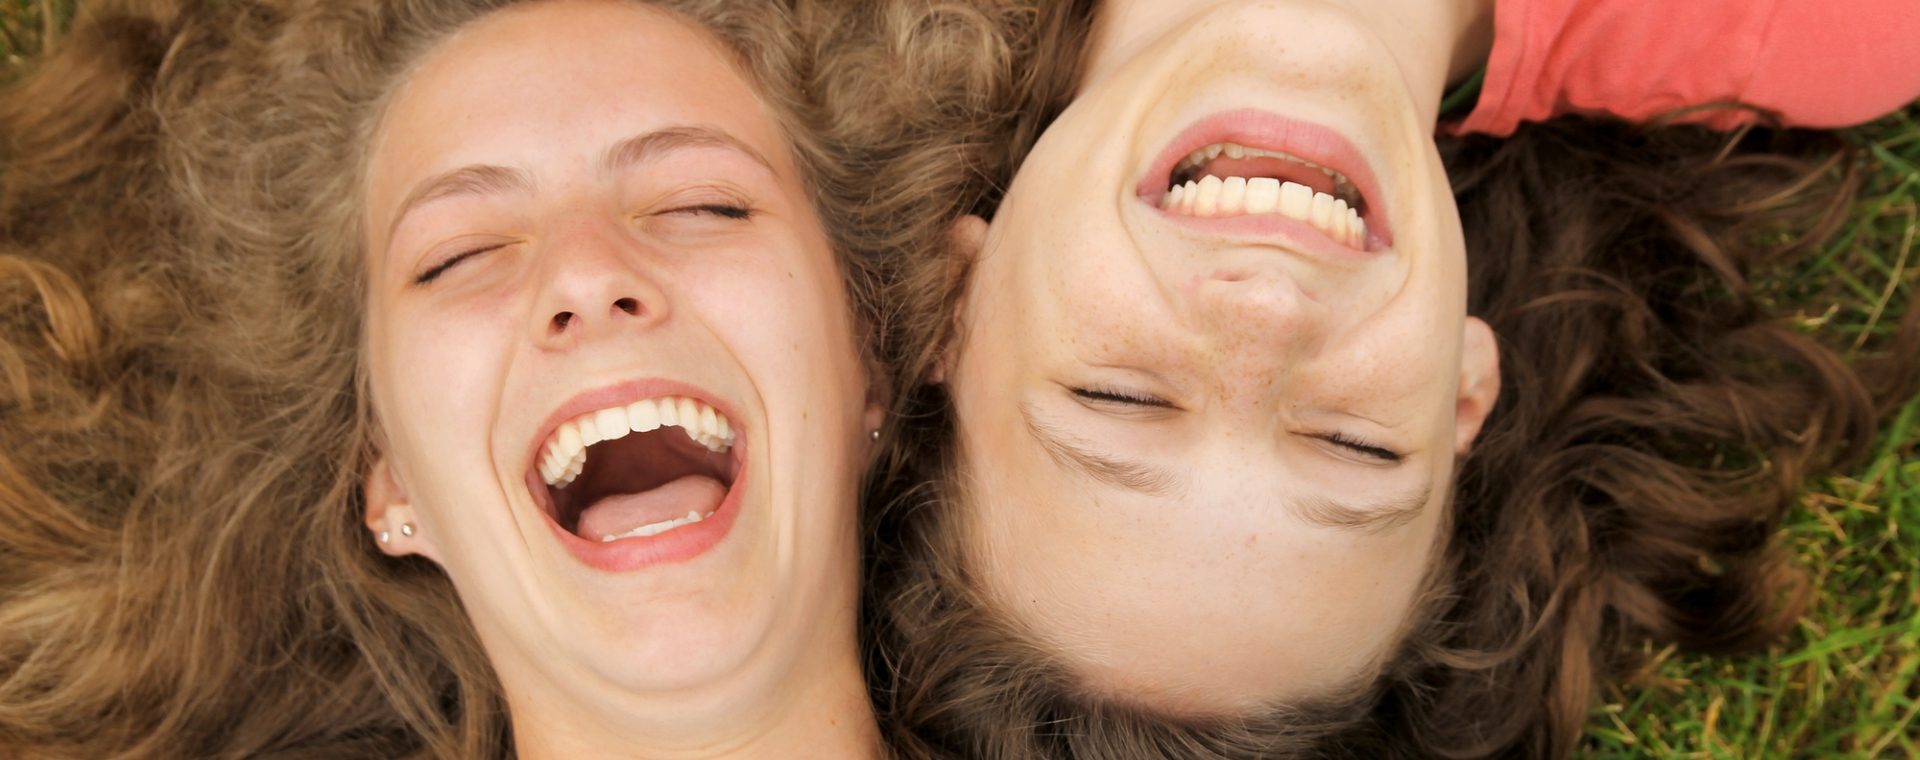 Lachen bewegt unseren Körper